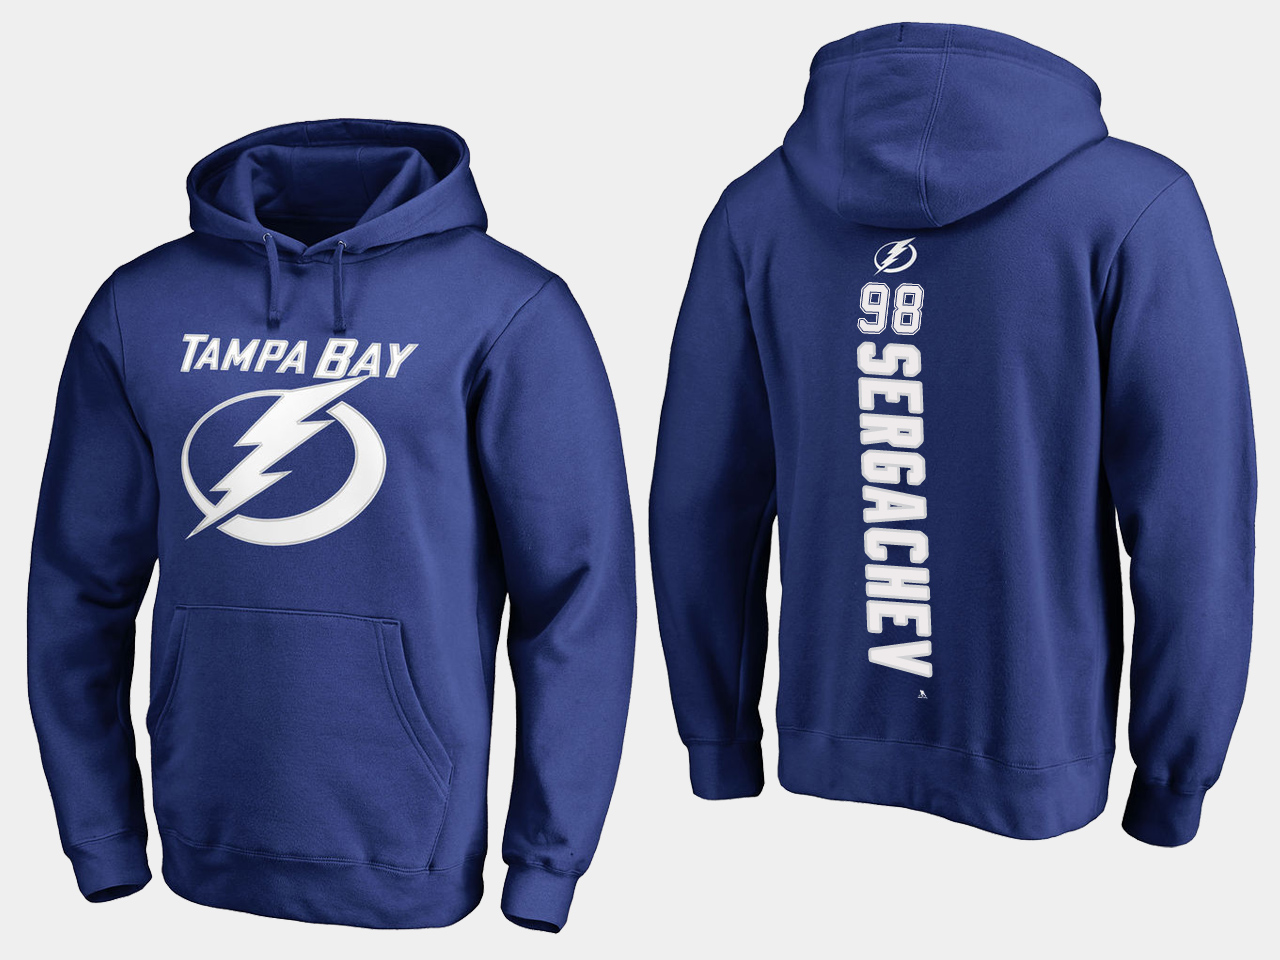 NHL Men adidas Tampa Bay Lightning 98 Sergachev blue hoodie